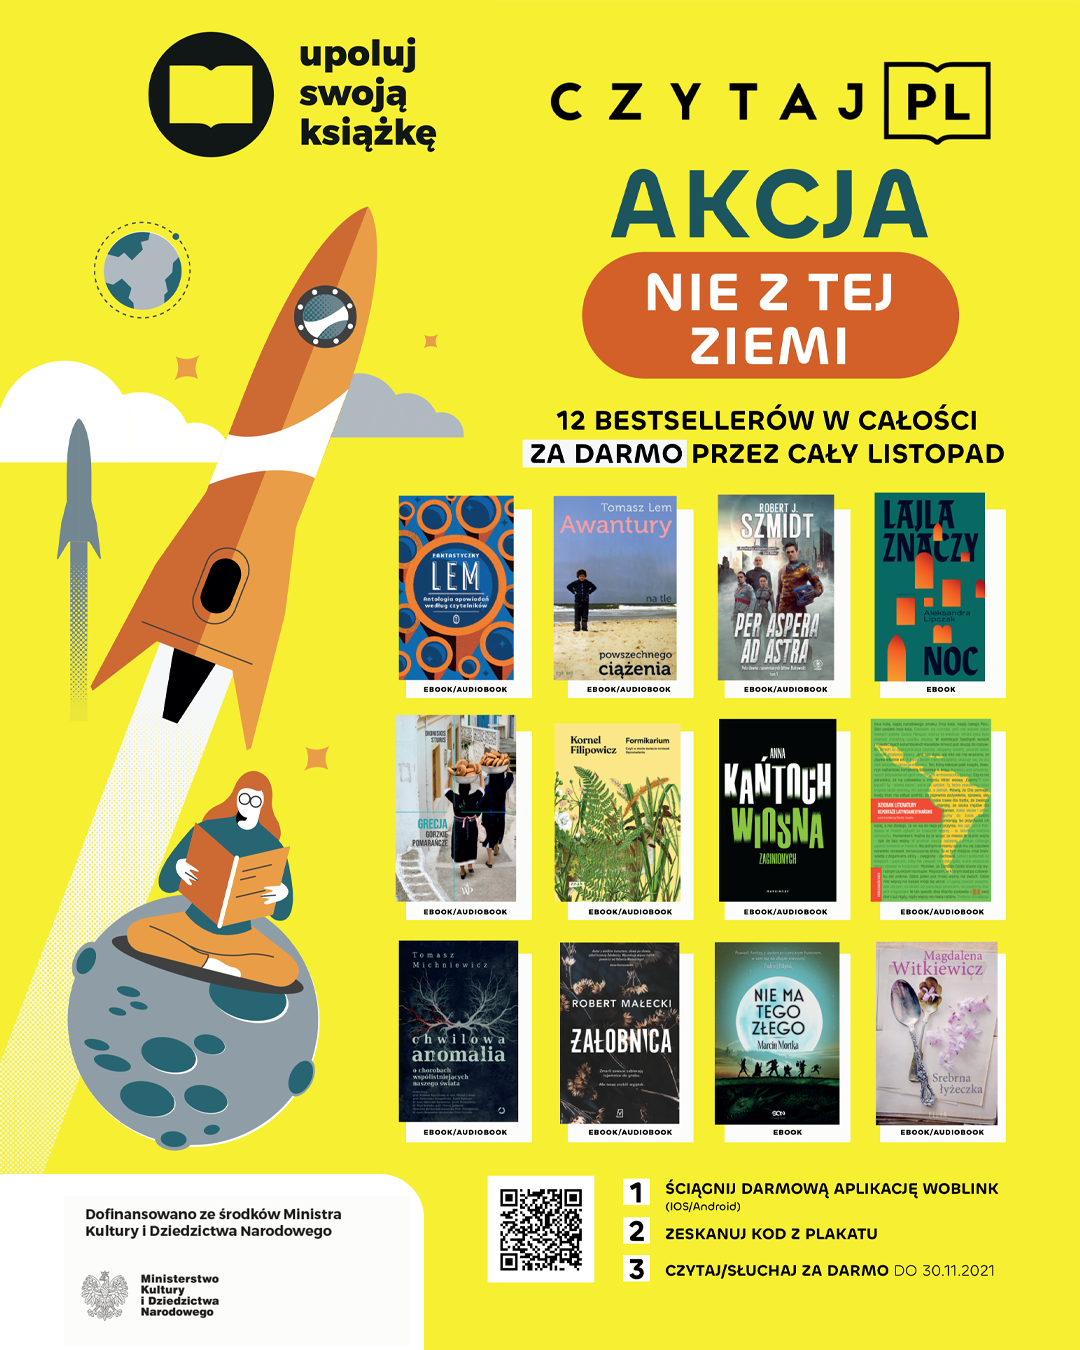 Żółty plakat promujący akację czytaj.pl. Na plakacie 12 okładek książek i napis "Akcja nie z tej Ziemi".